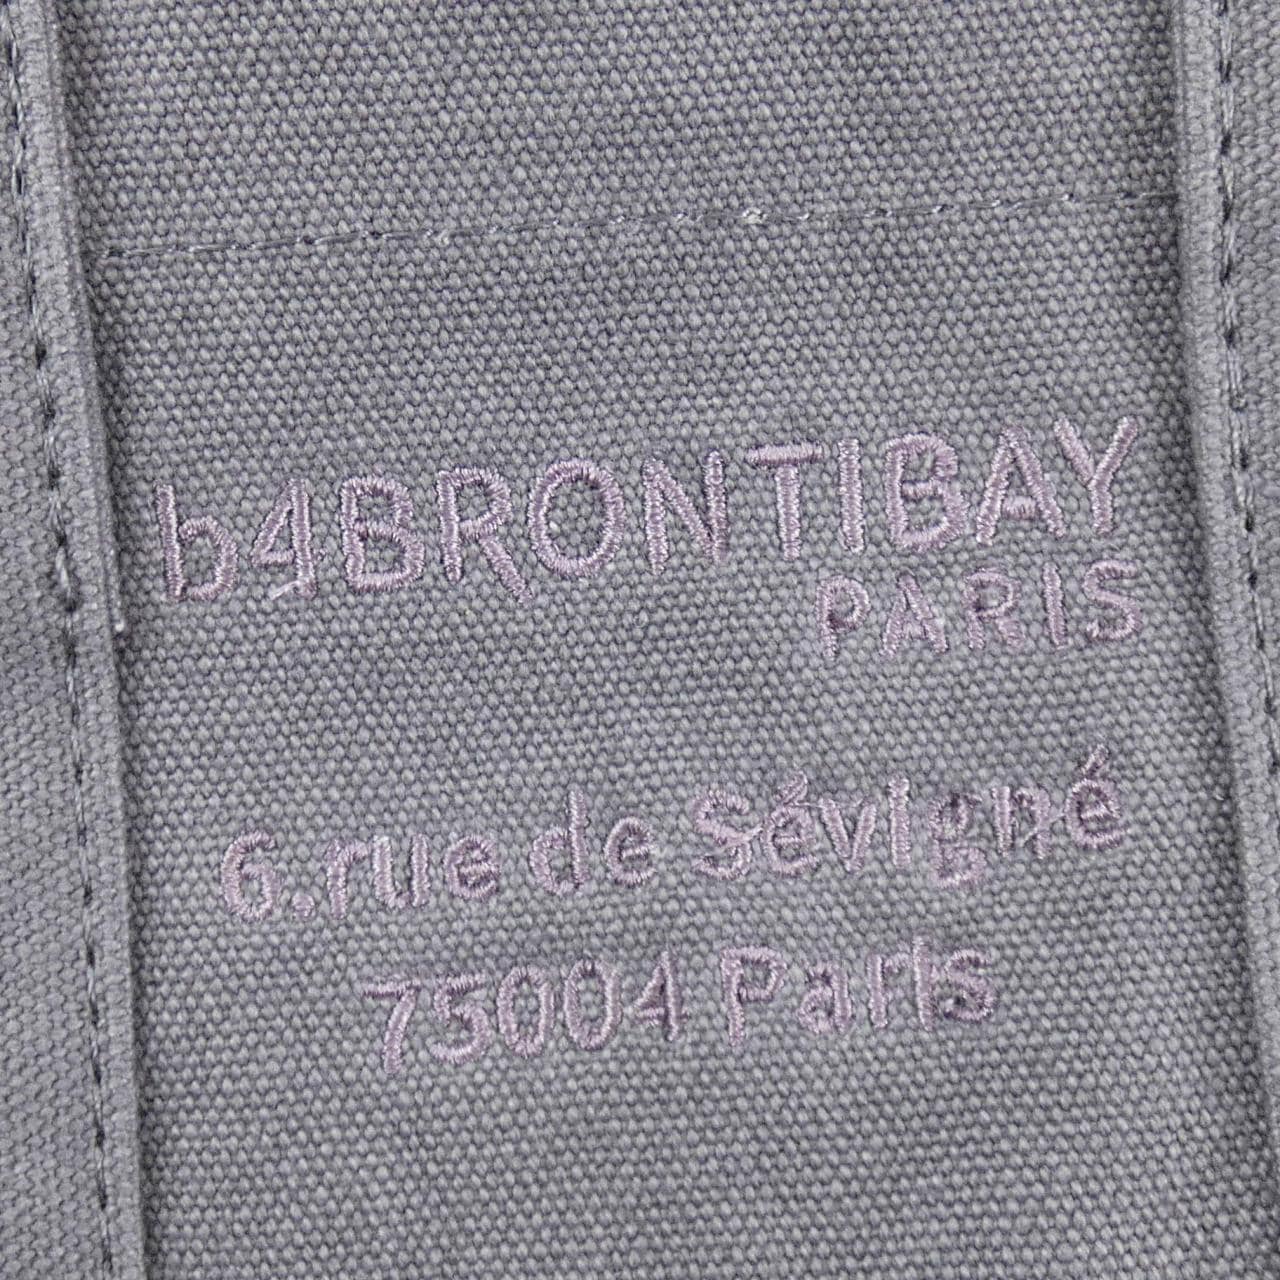 BRONTIBAY BAG